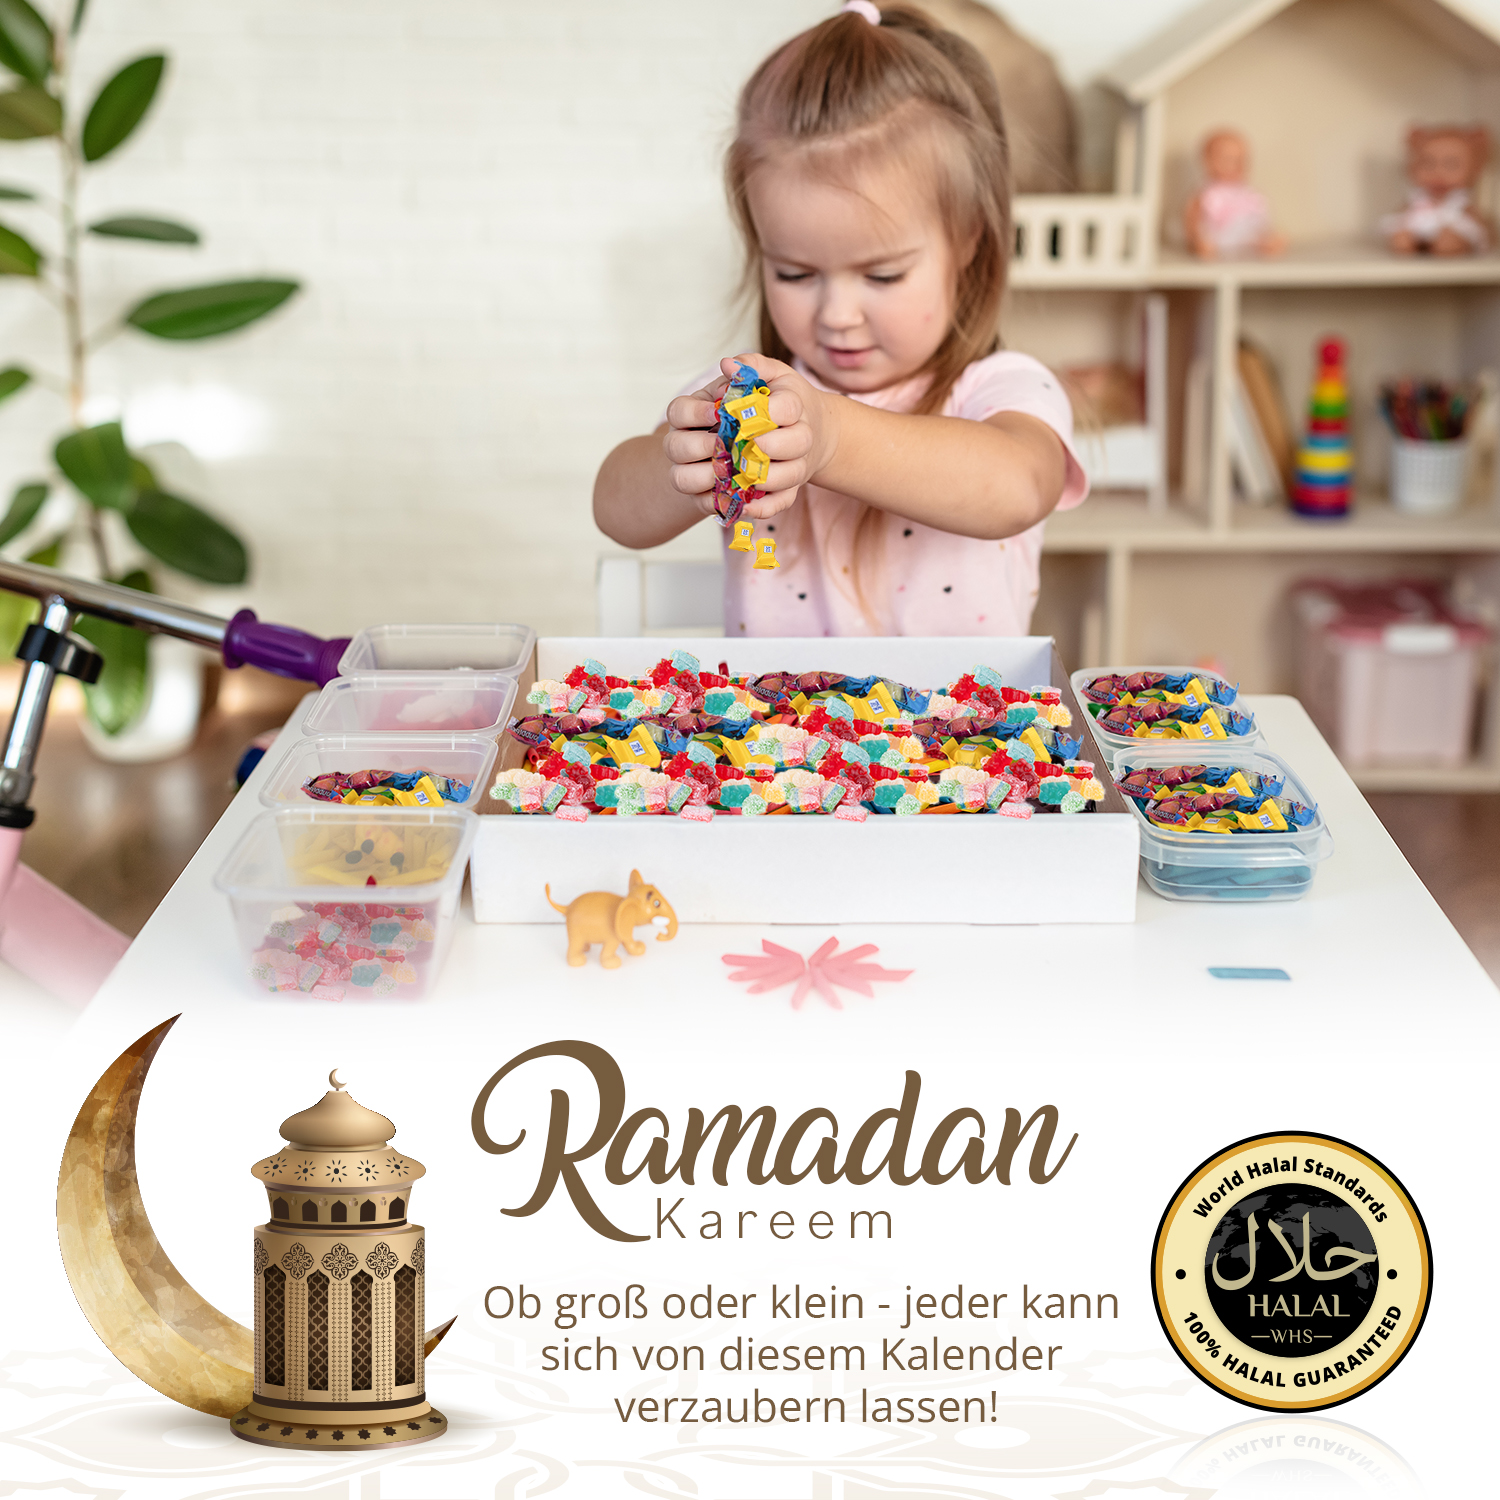 Ramadankalender Kinder - 100% Halal - Gama Zuckersüß, 14,99 €